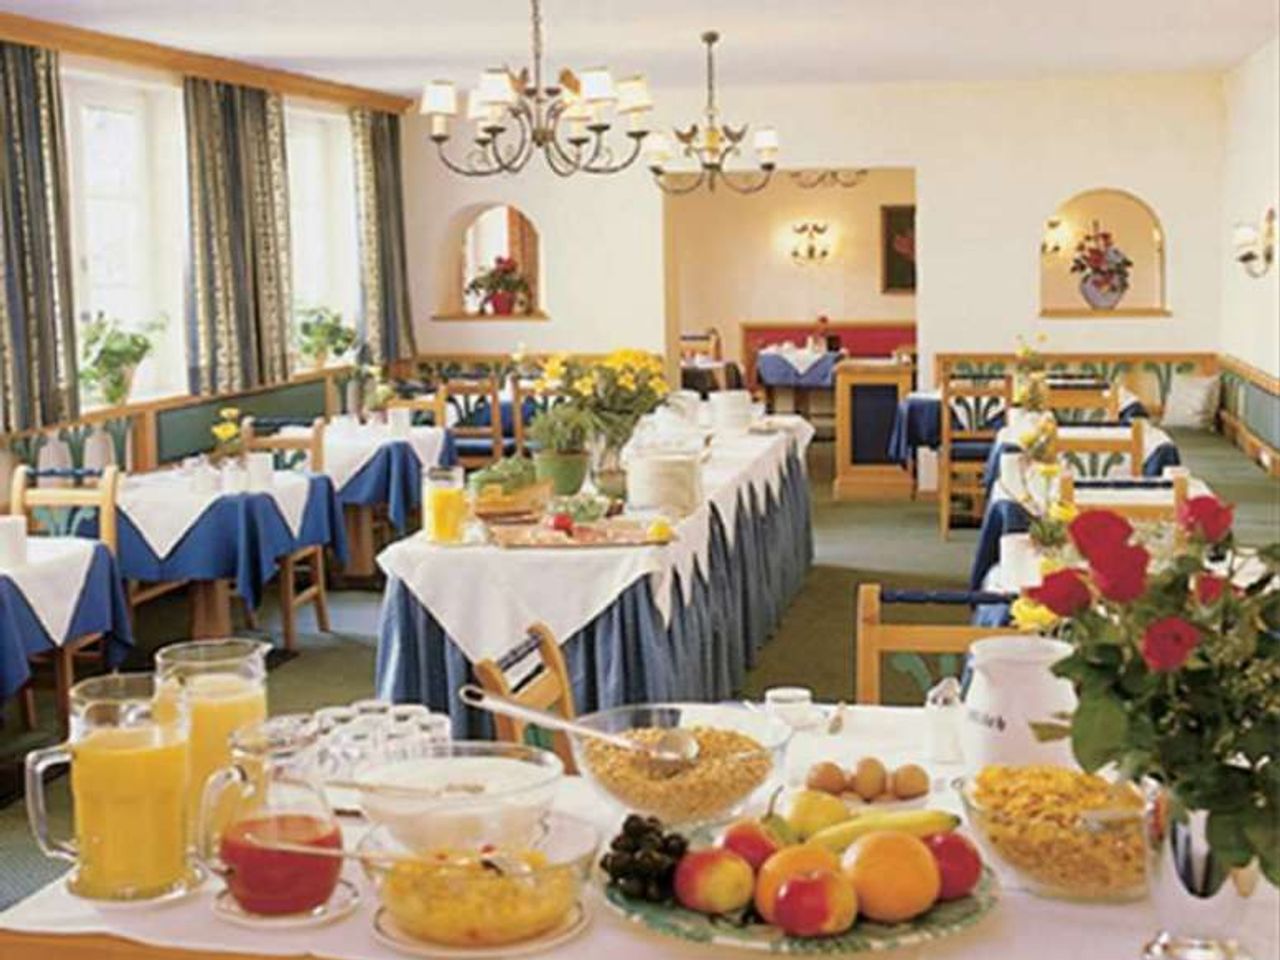 2 Tage im Hotel Markus Sittikus mit Frühstück